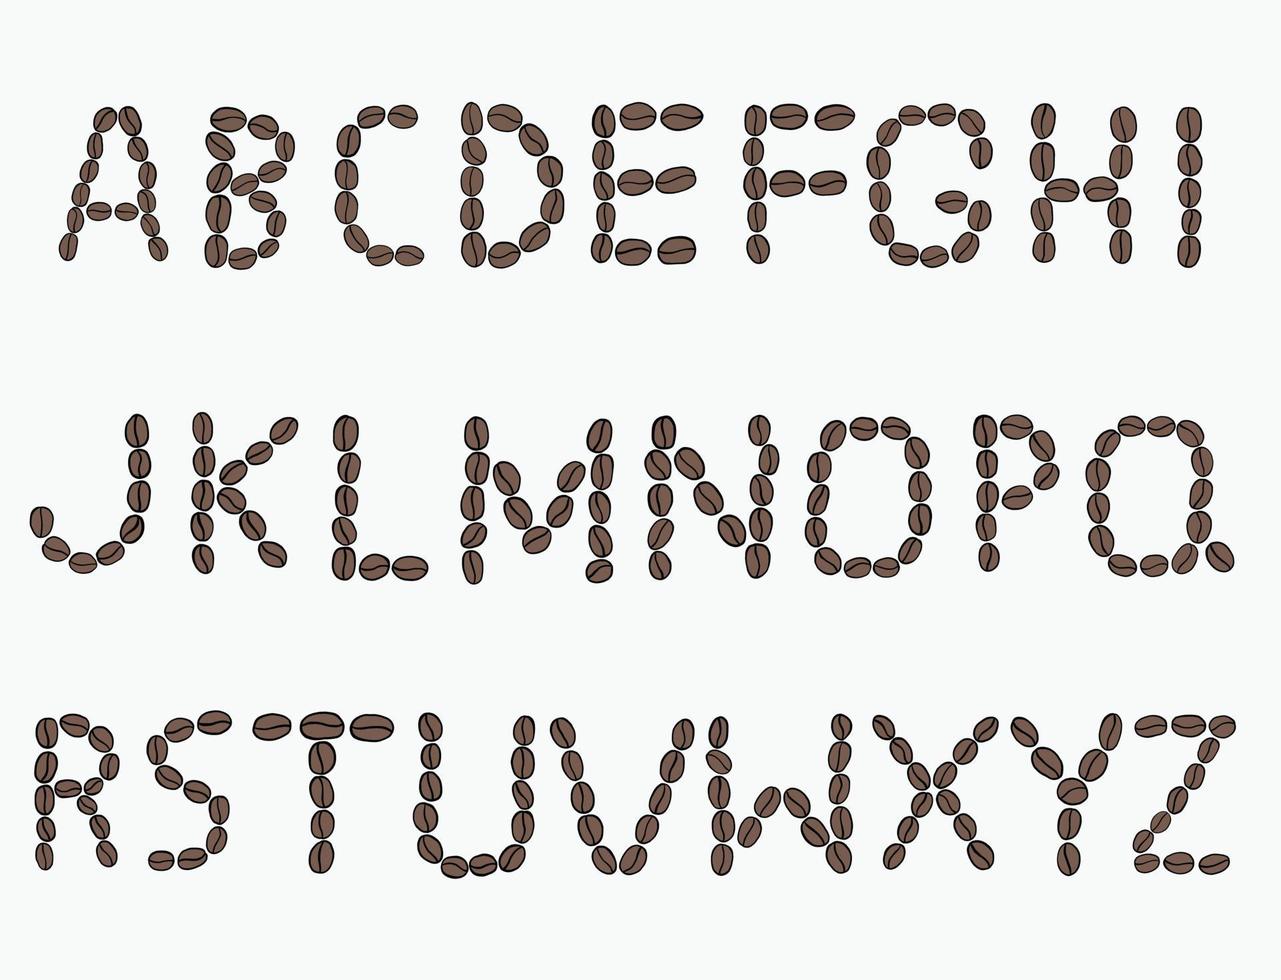 dibujo a mano alzada del alfabeto de los granos de café en el fondo blanco. vector